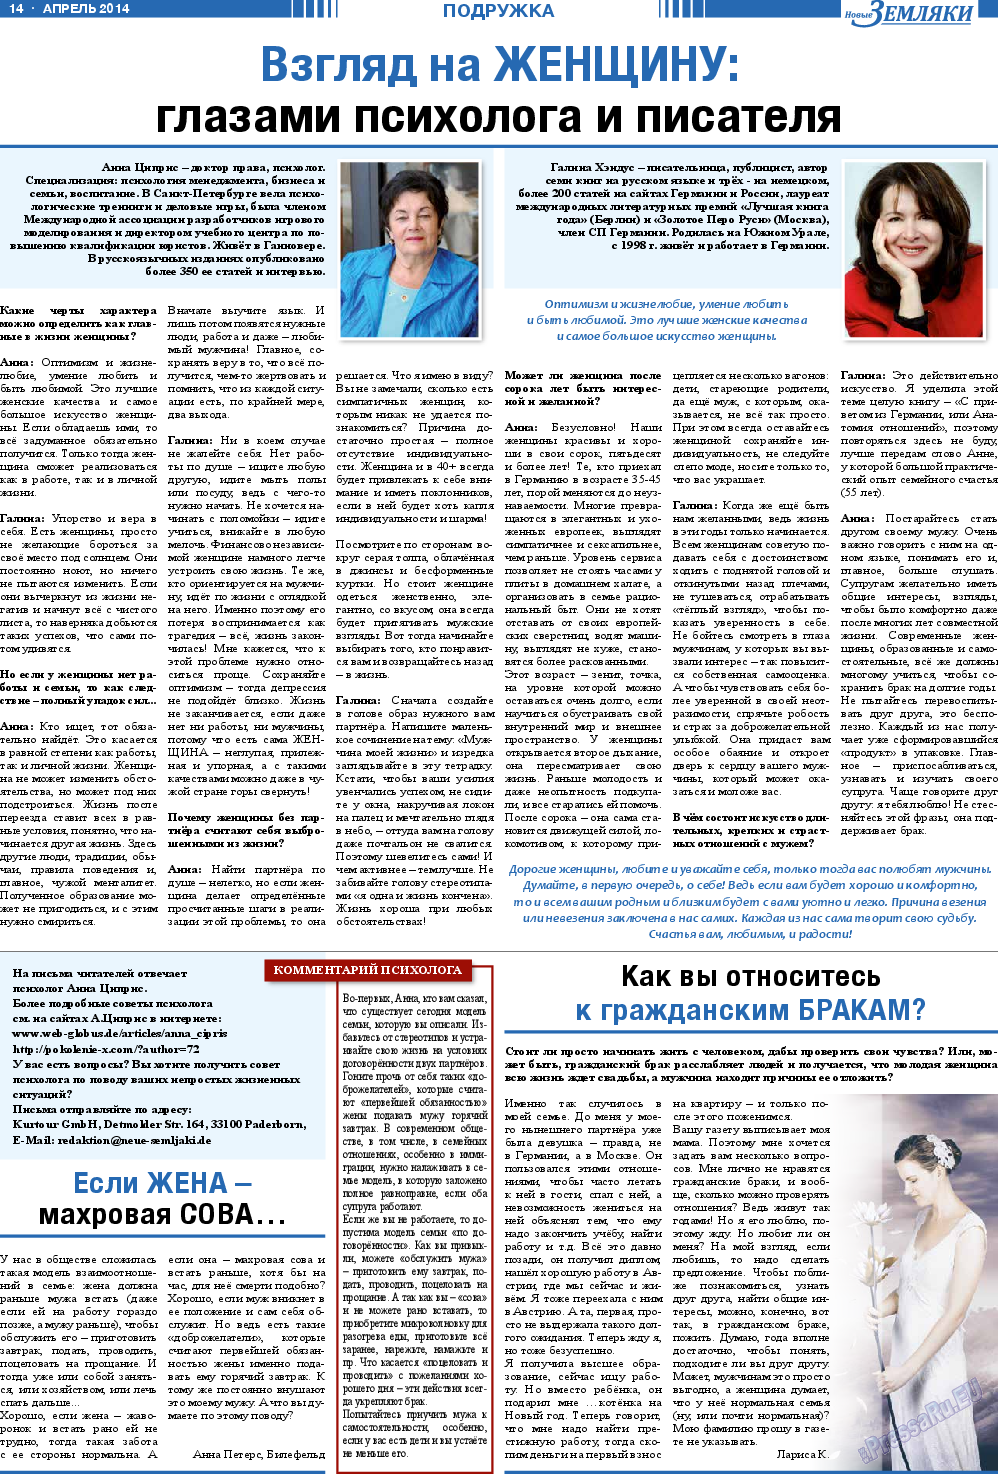 Новые Земляки, газета. 2014 №4 стр.14